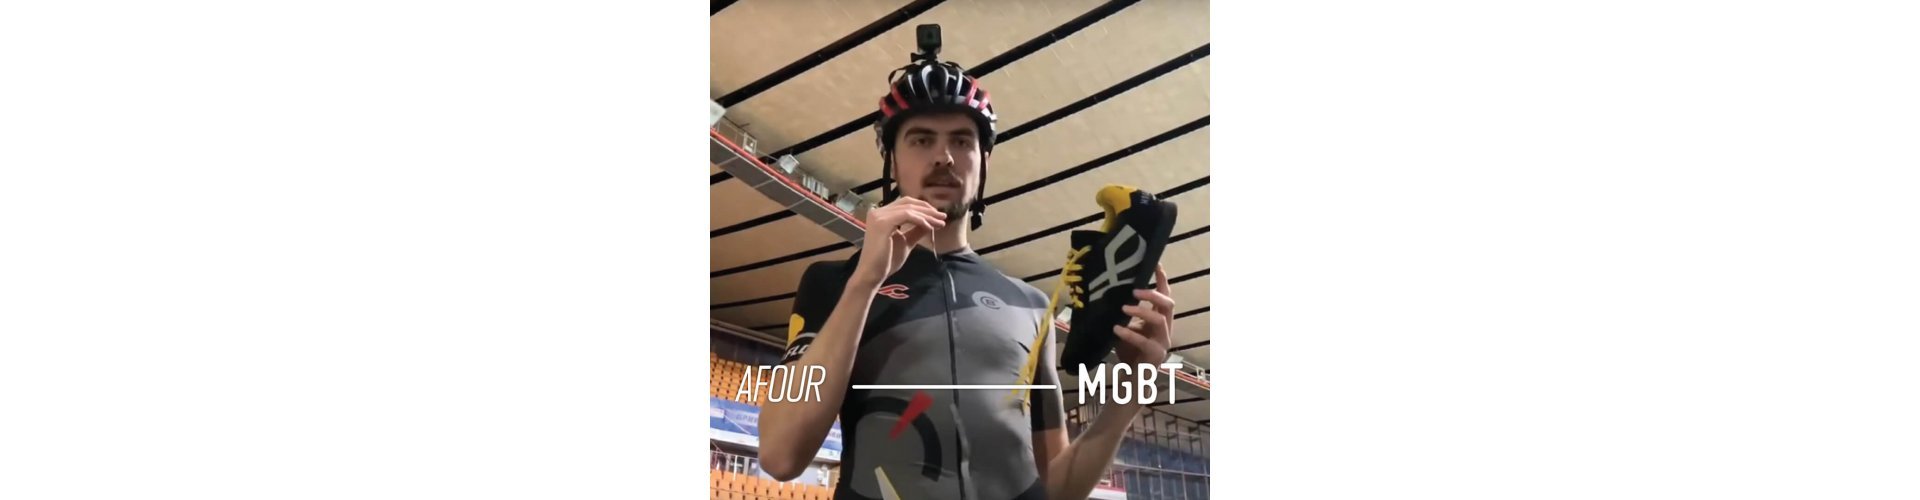 Видео об истории создания велокроссовок SPD в коллаборации MGBT x AFOUR